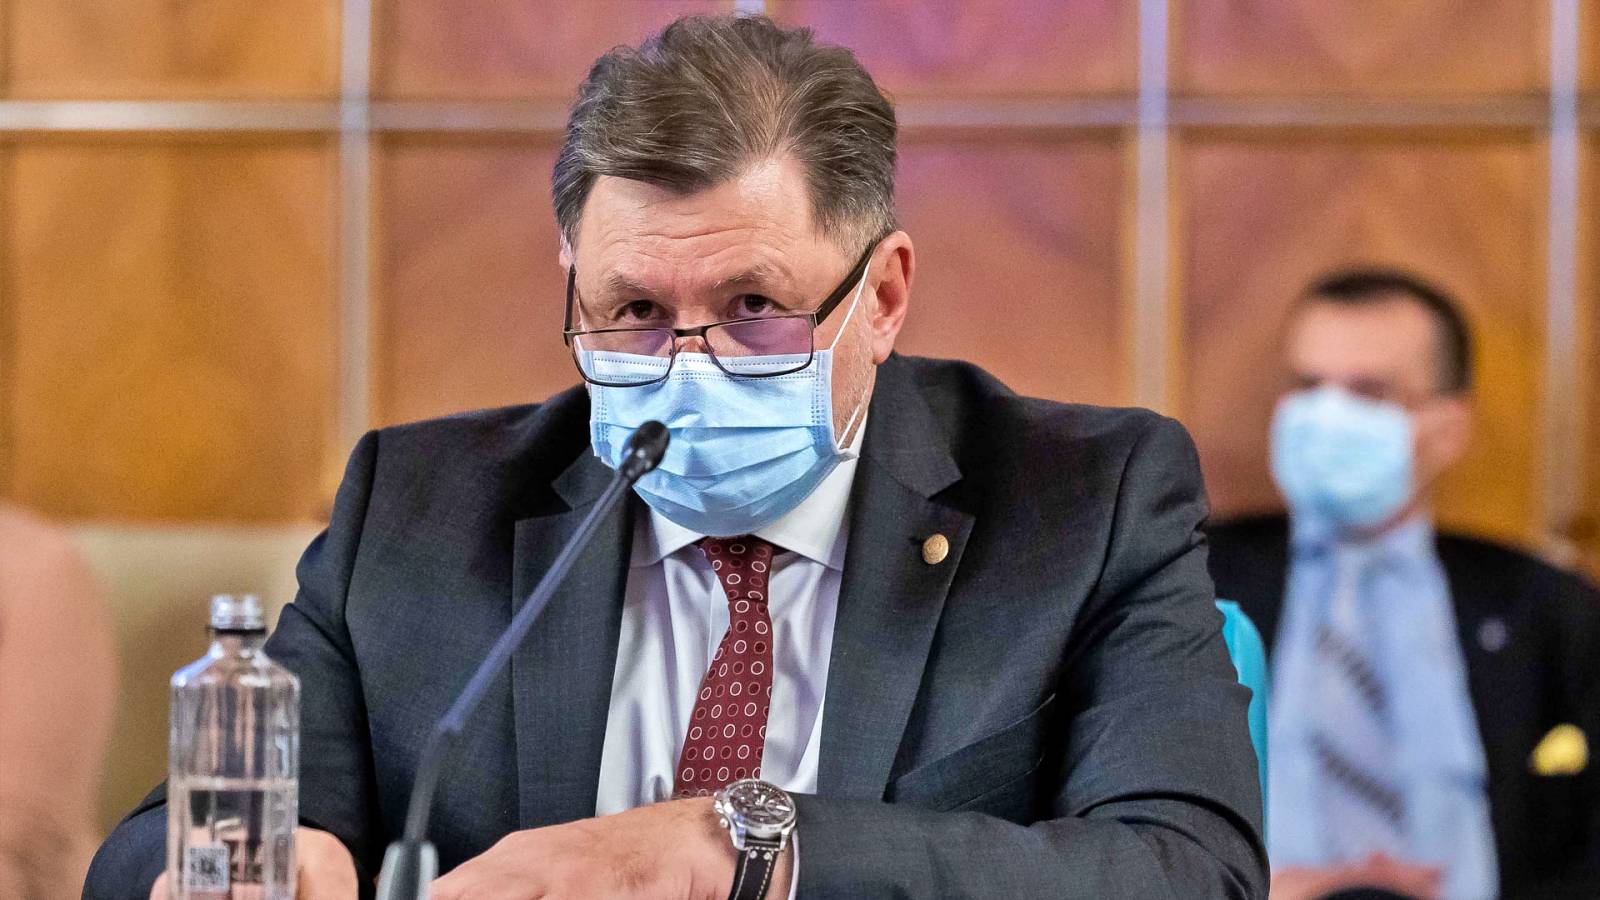 Sundhedsminister sidste øjebliks vigtig erklæring rumænere målrettet nu